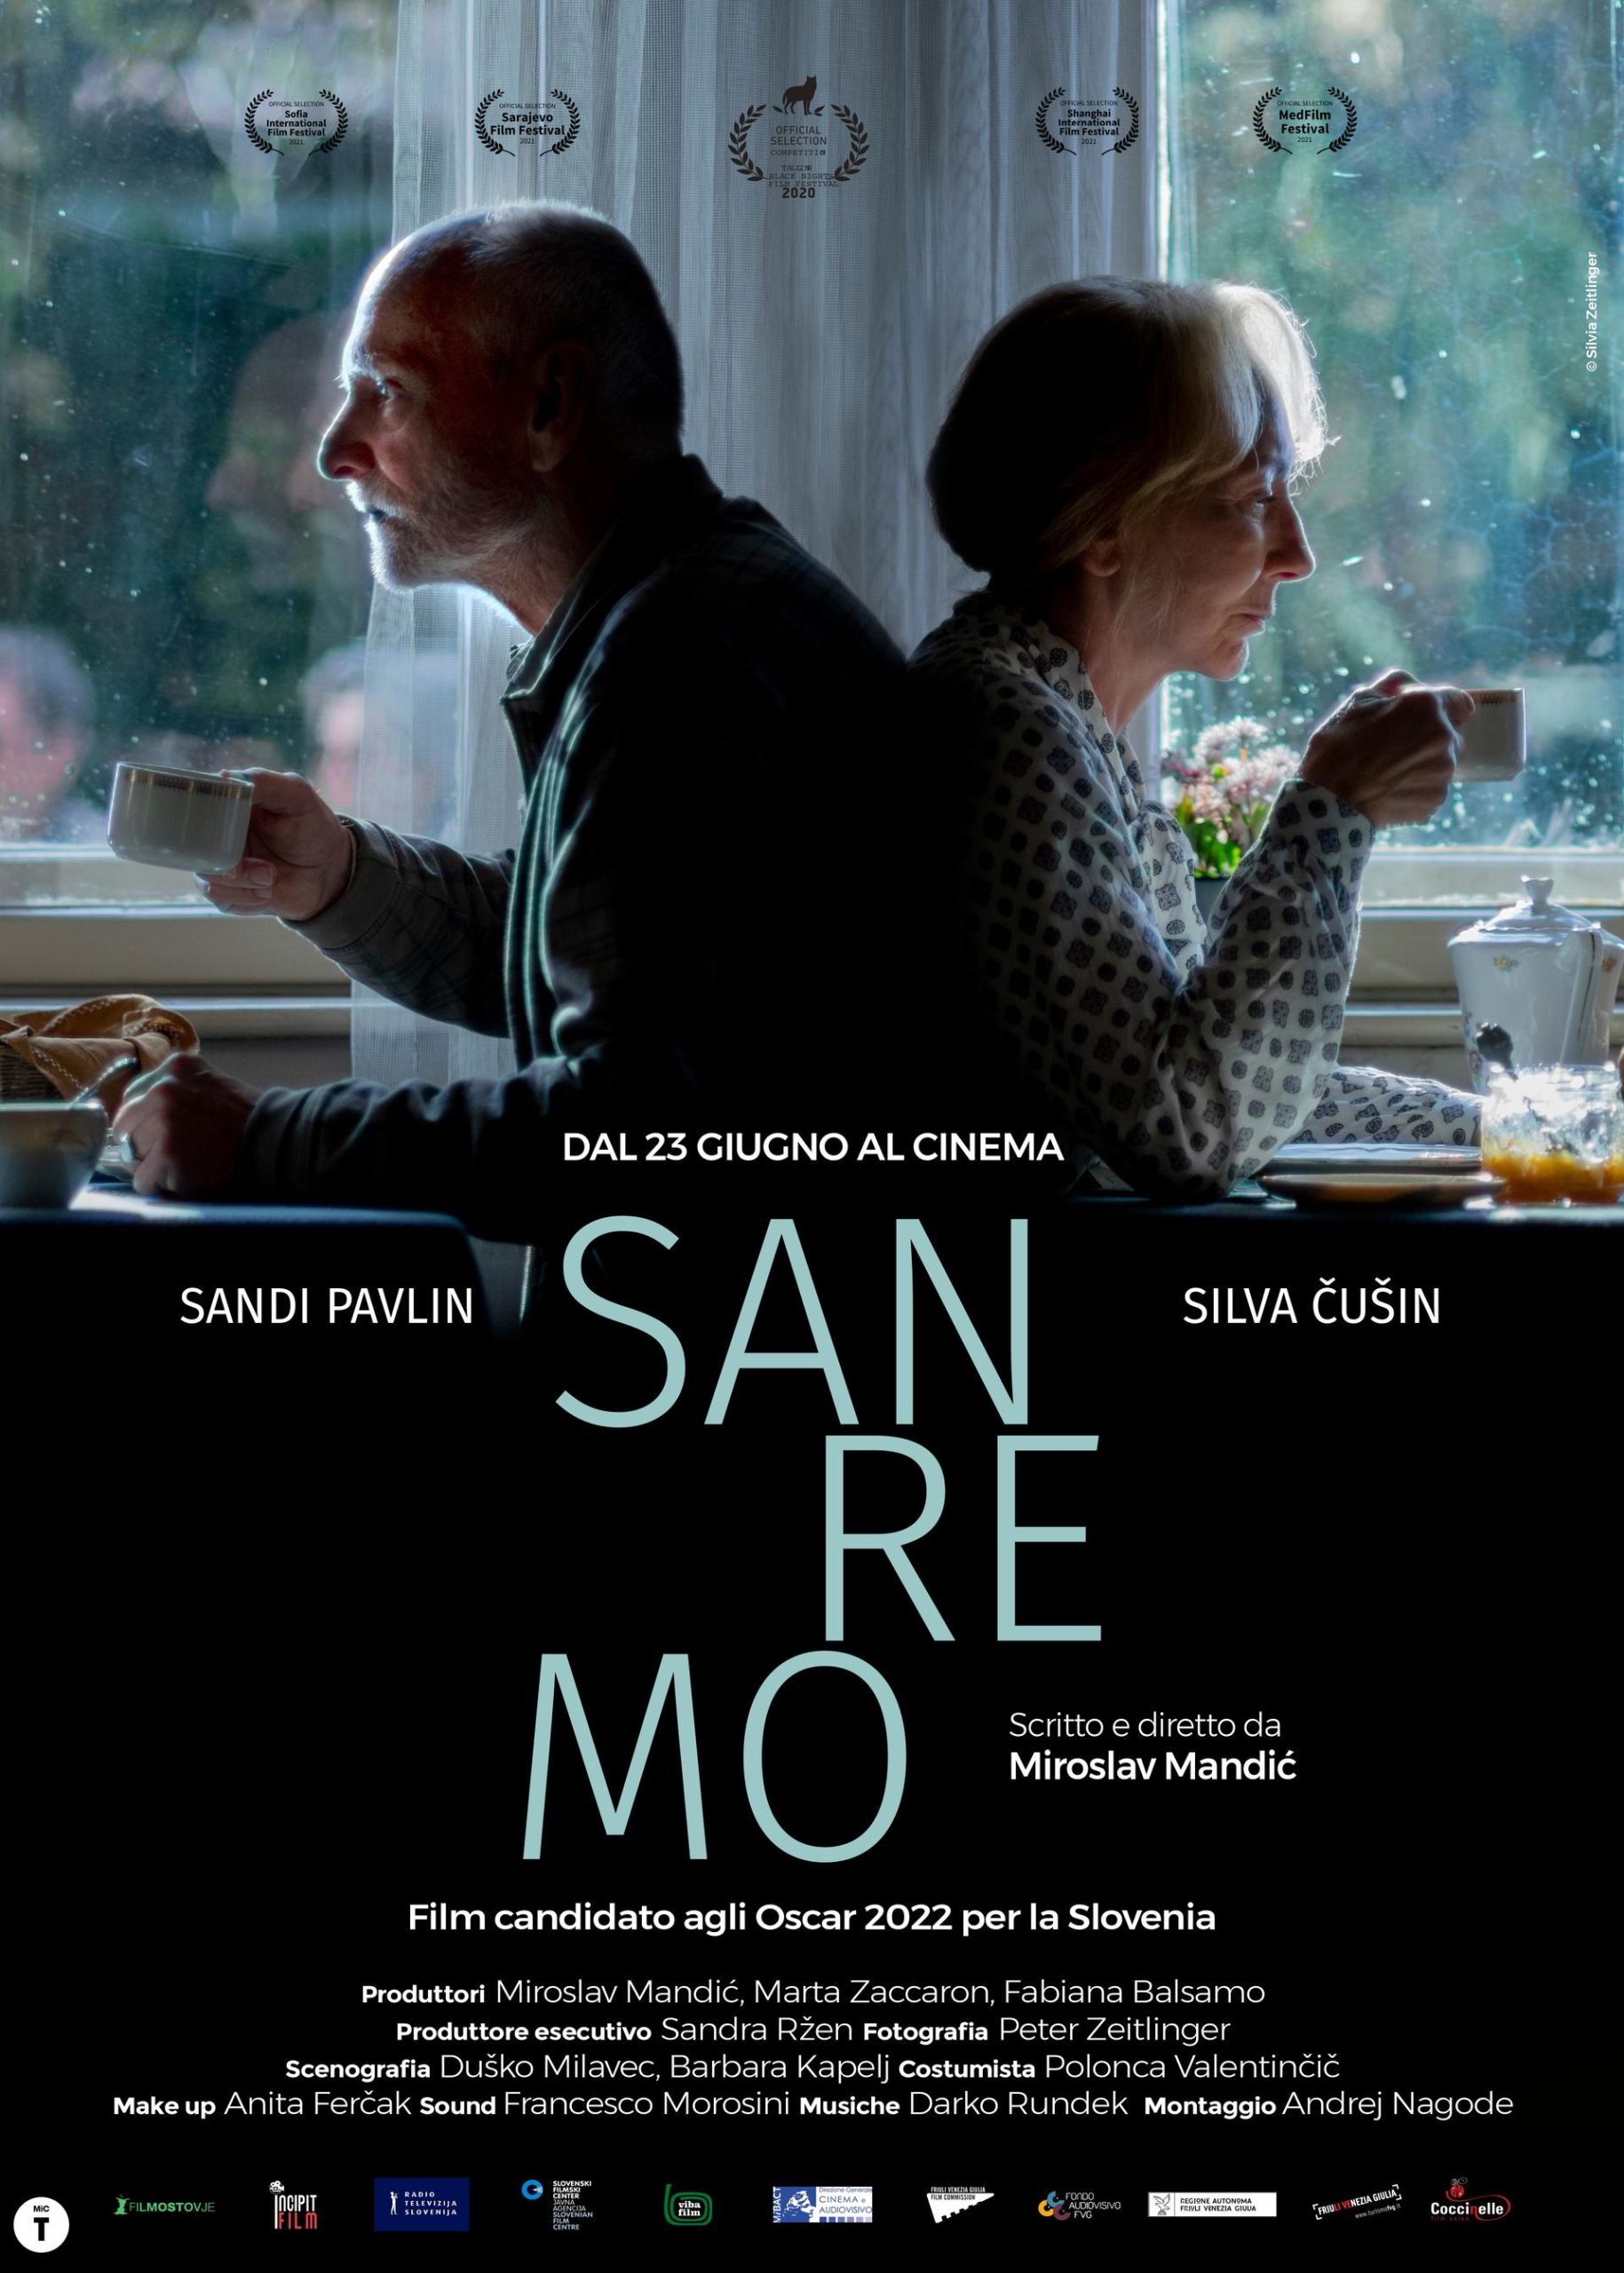 Dal 23 giugno esce nelle sale SANREMO, il film sloveno candidato agli Oscar 2022